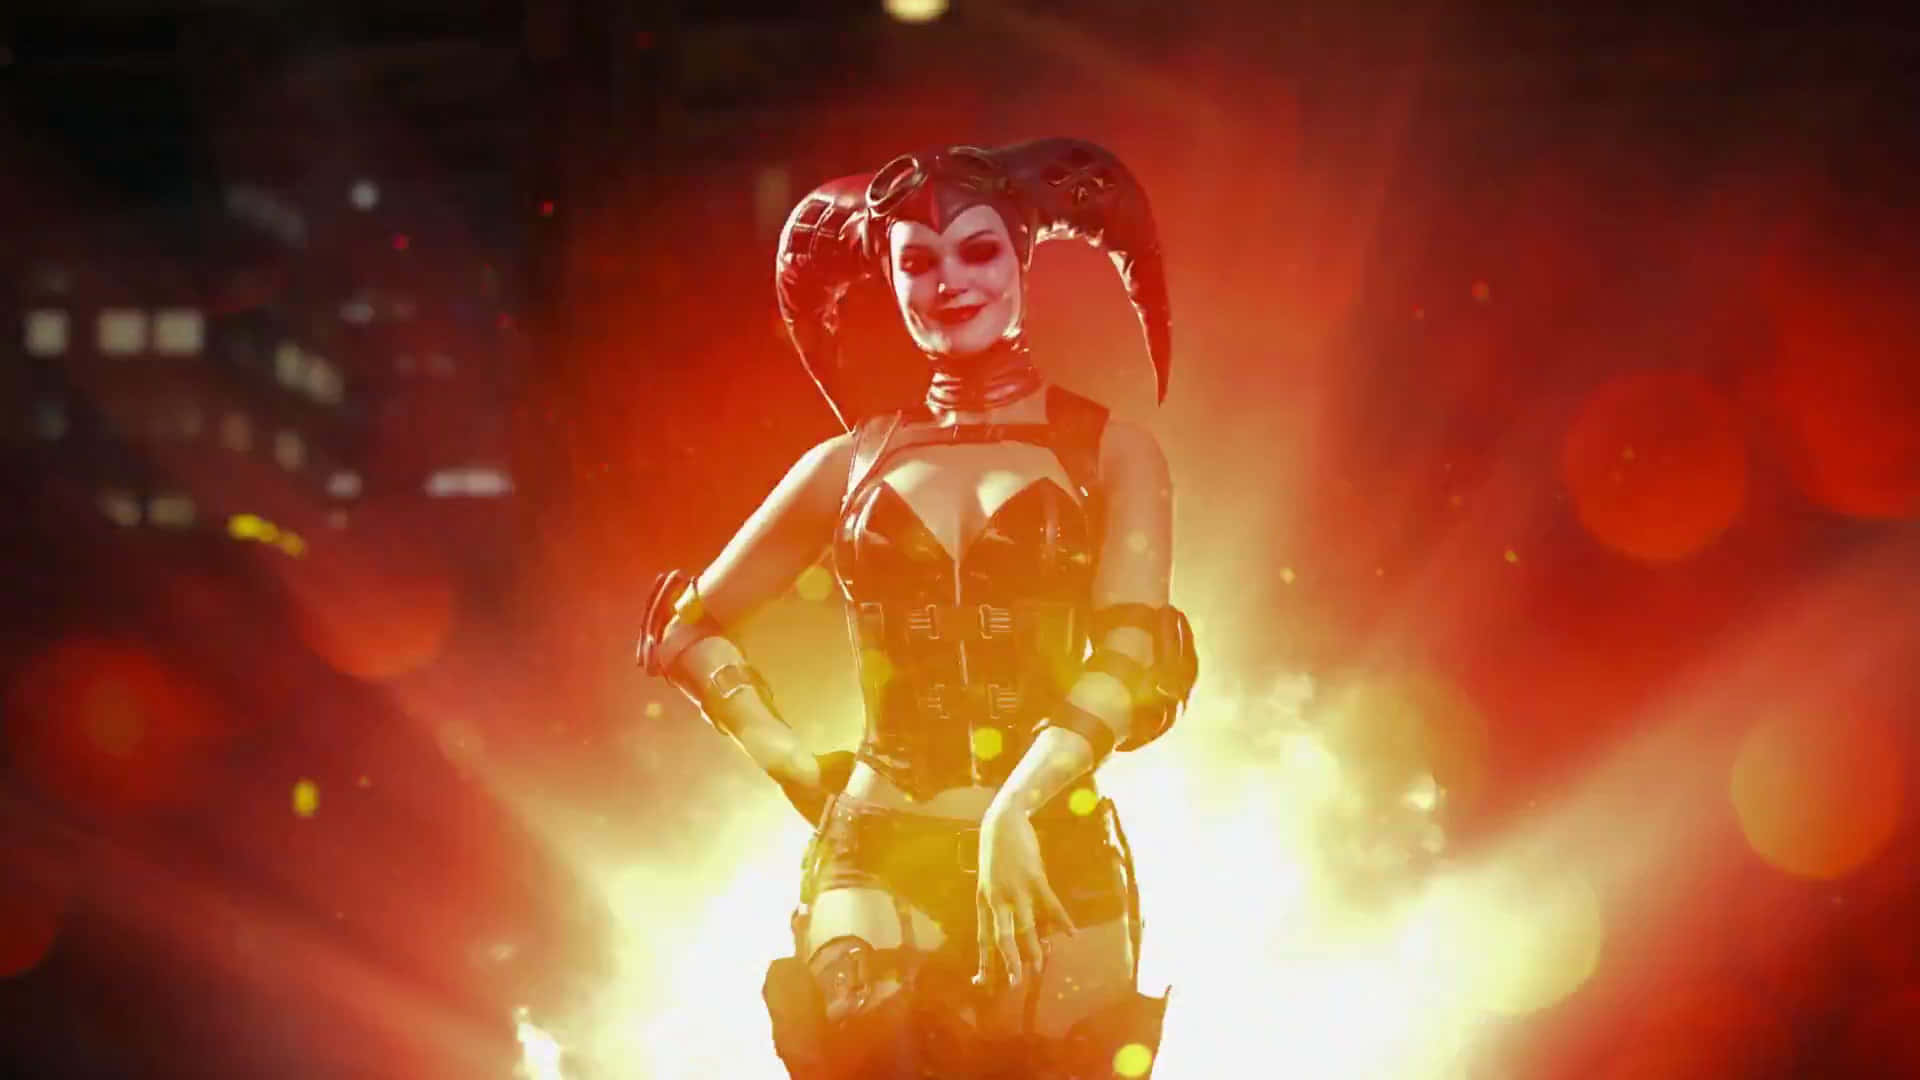 Preparatiper Entrare In Un Nuovo Mondo Di Caos E Distruzione - Injustice 2 Con Harley Quinn! Sfondo